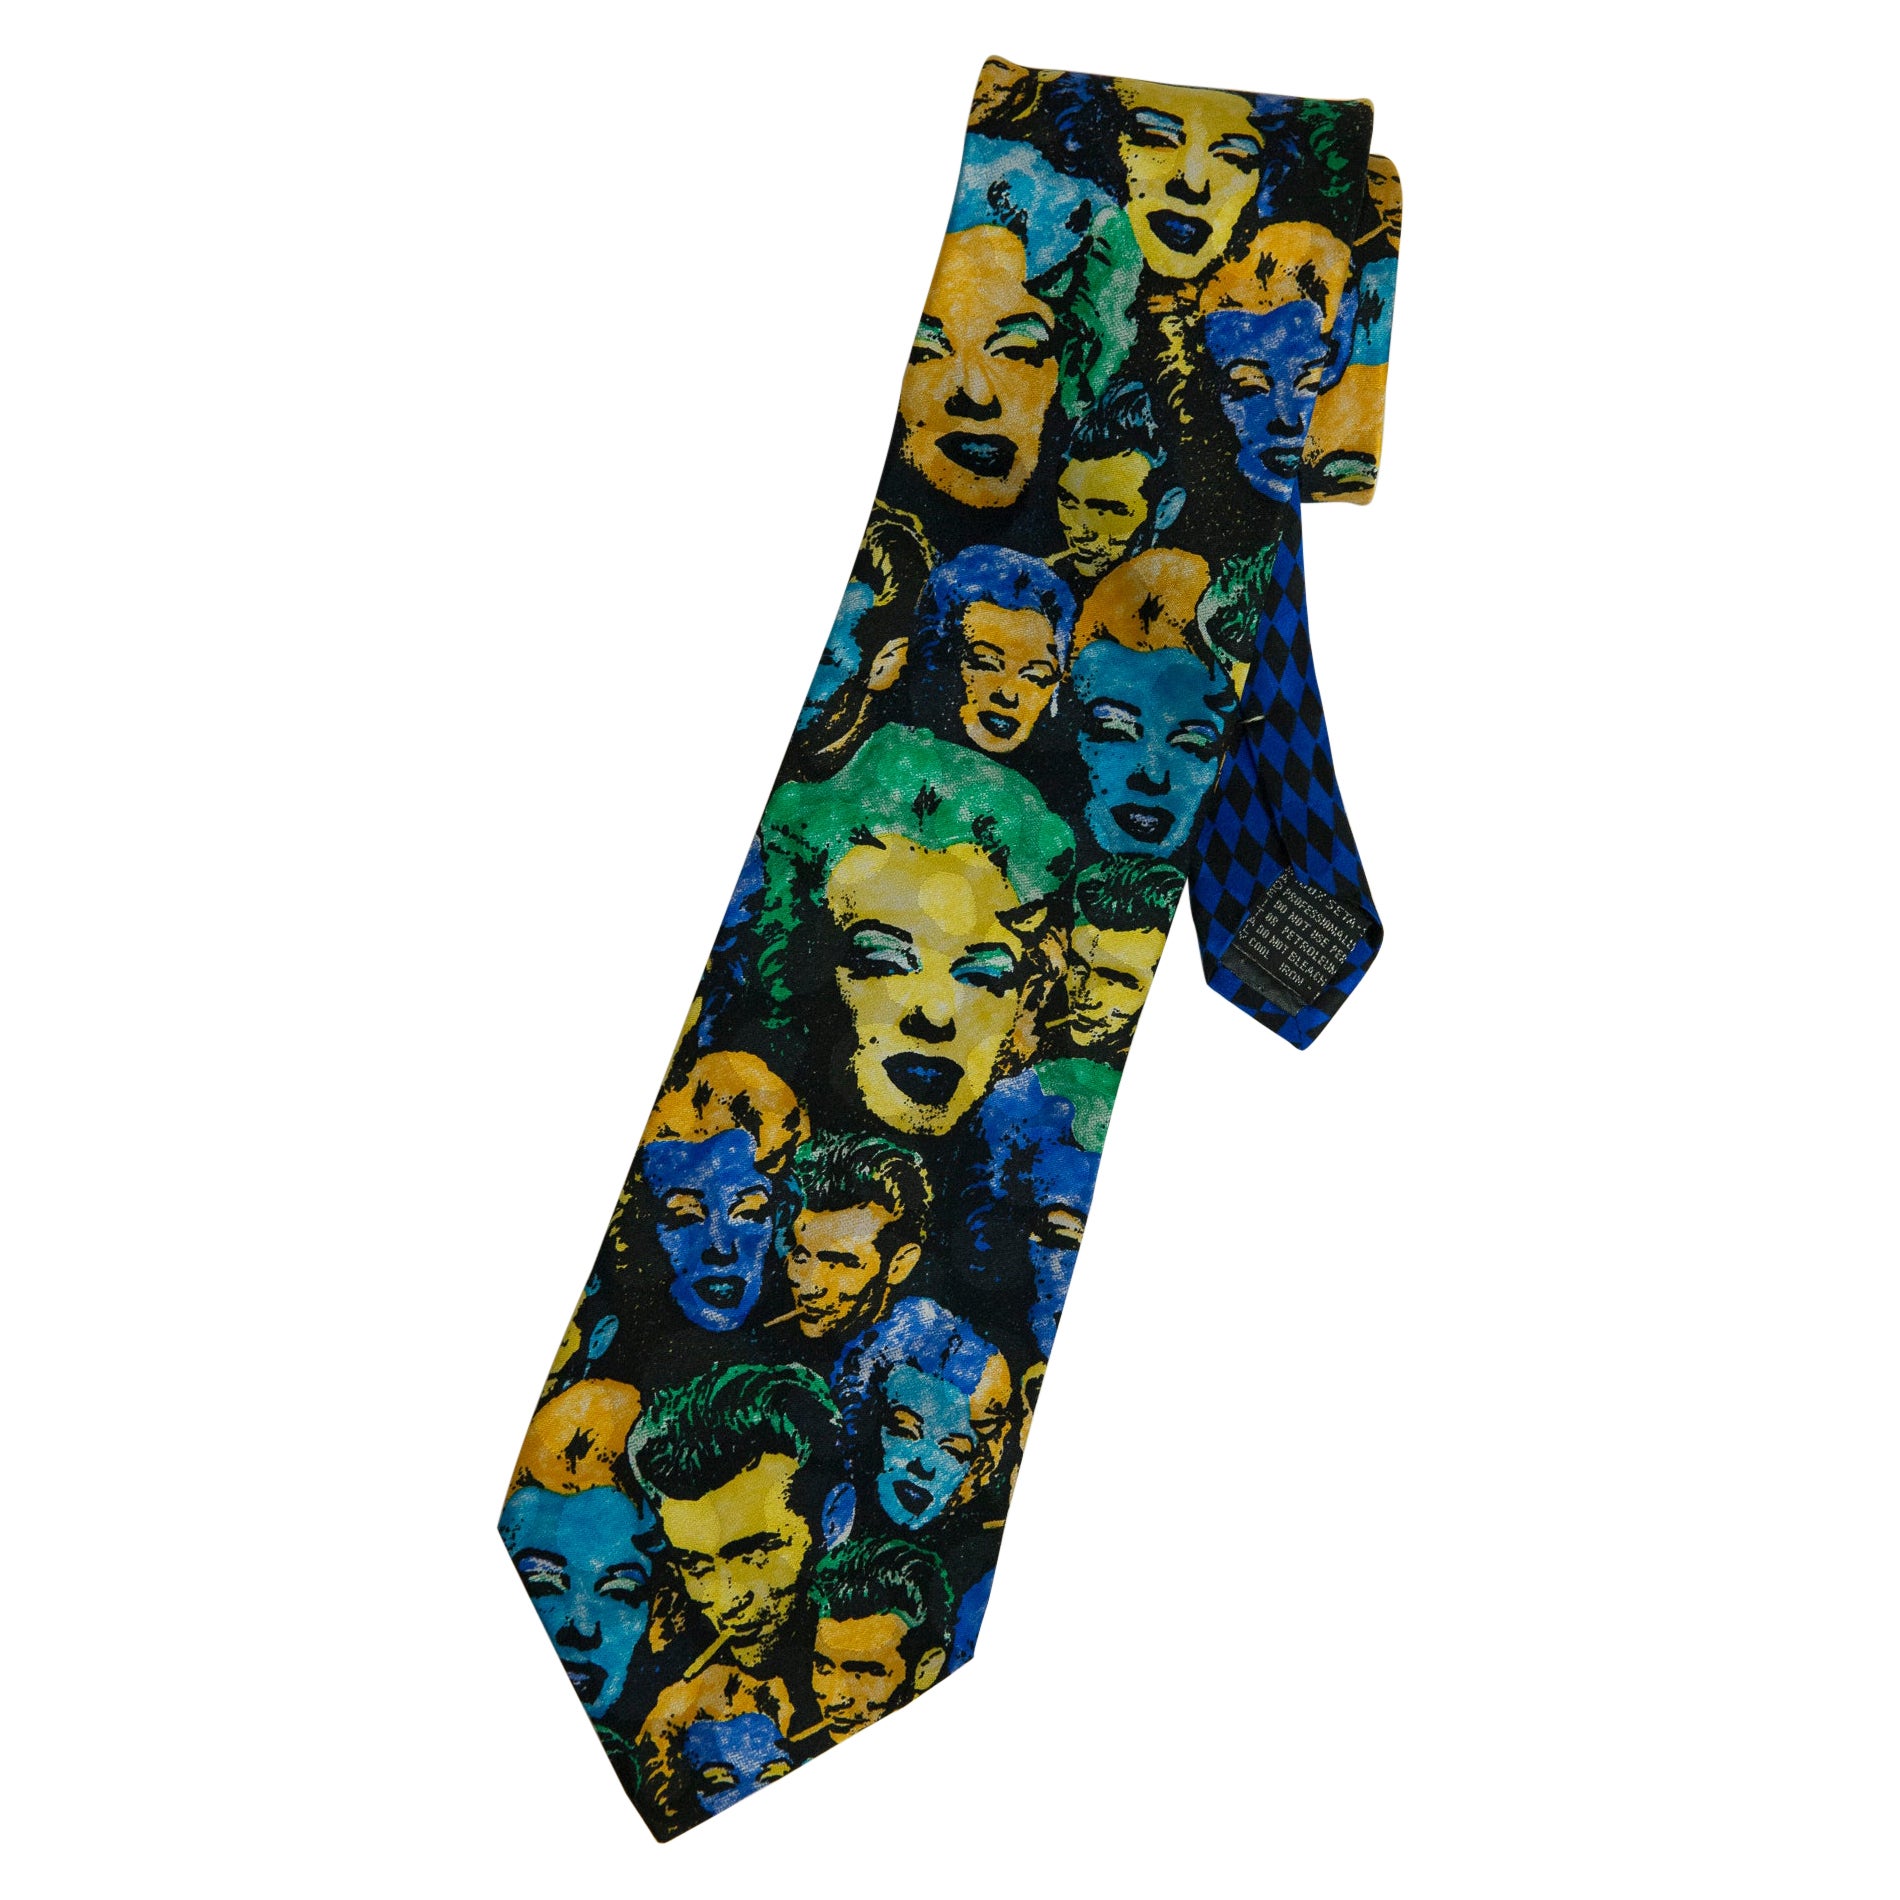 Cravate en soie imprimée Marilyn & James Dean de Gianni Versace